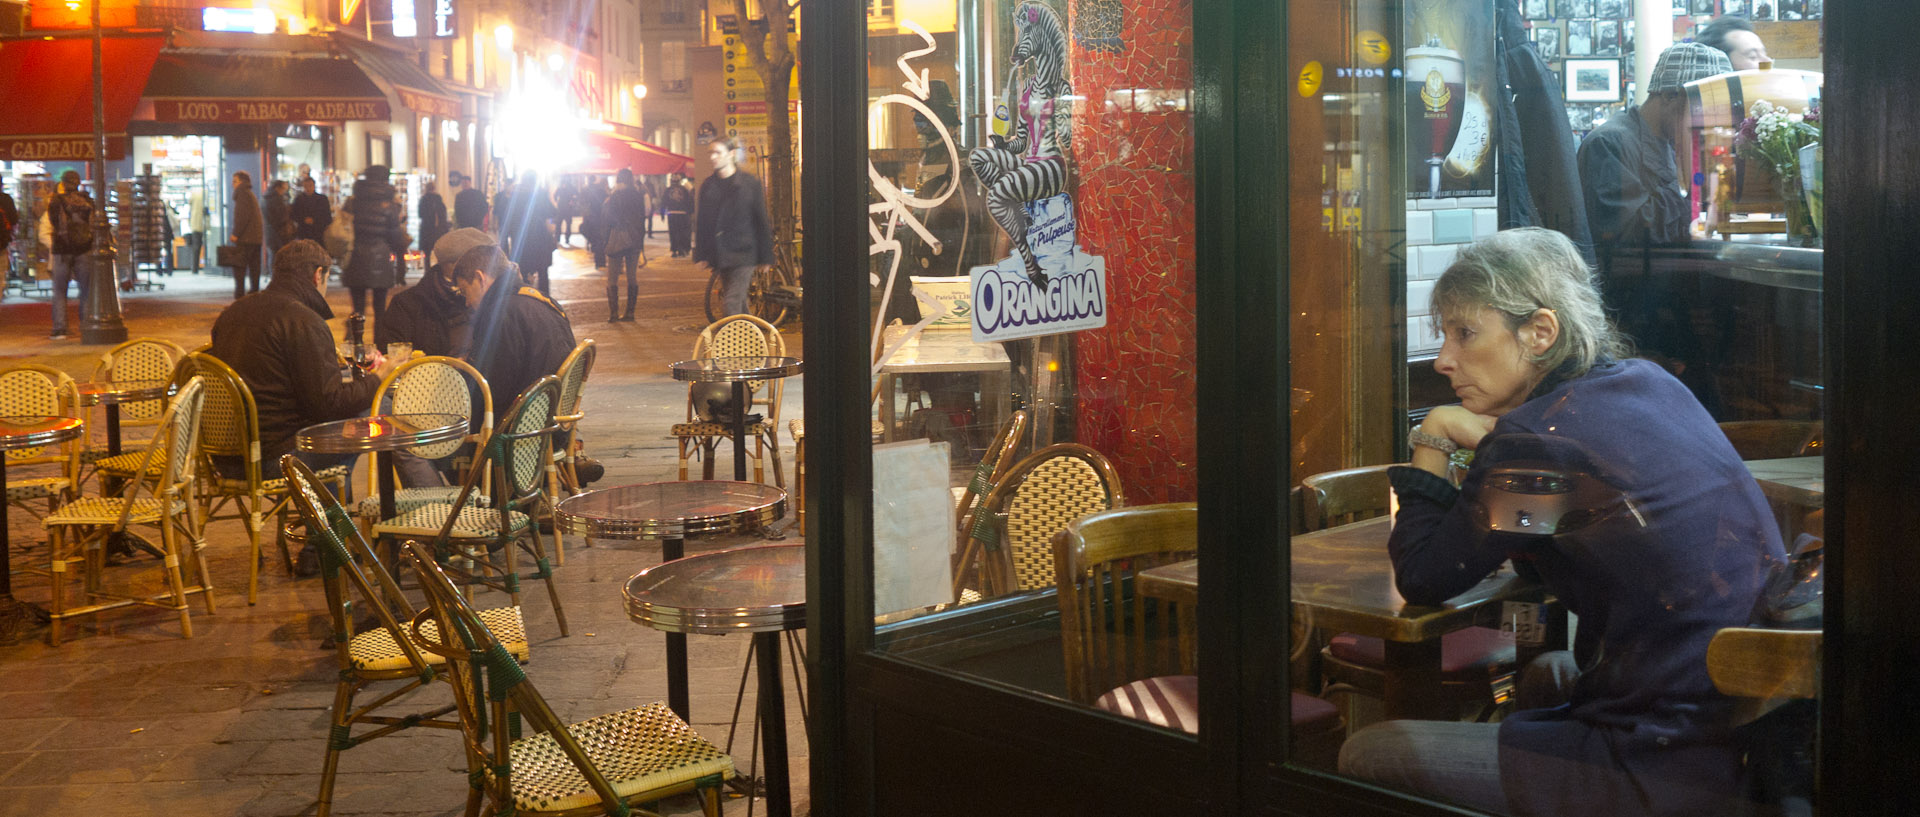 Terrasse de café, rue des Halles, à Paris.